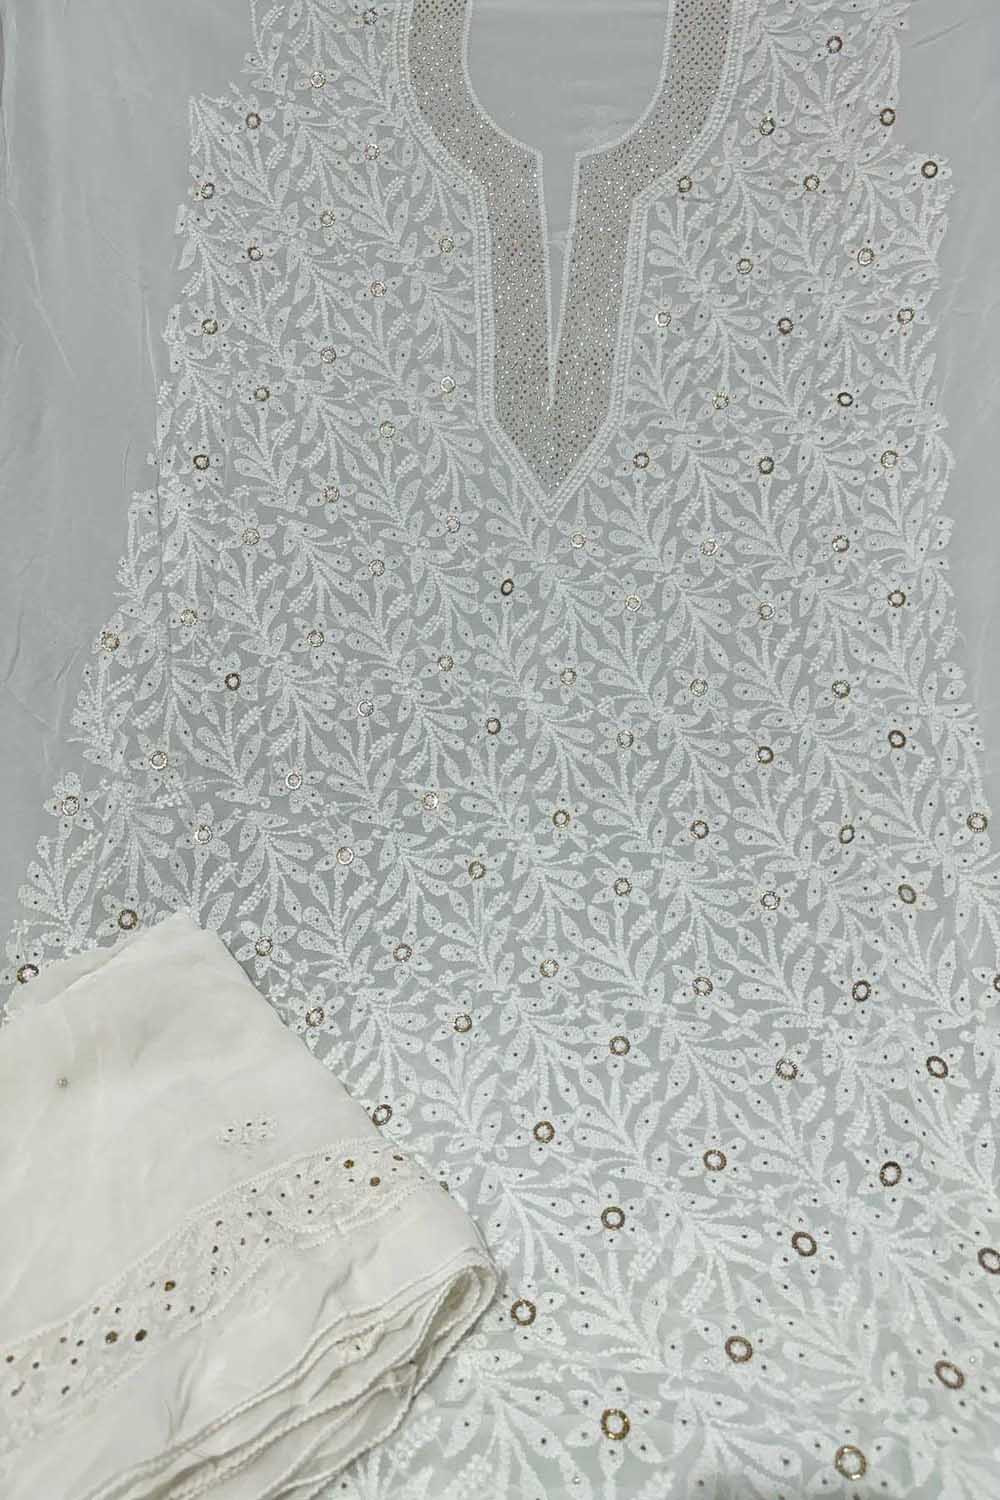 Exquisite Georgette Unstitched Suit: Hand-Embroidered Chikankari Mukaish Work - Luxurion World